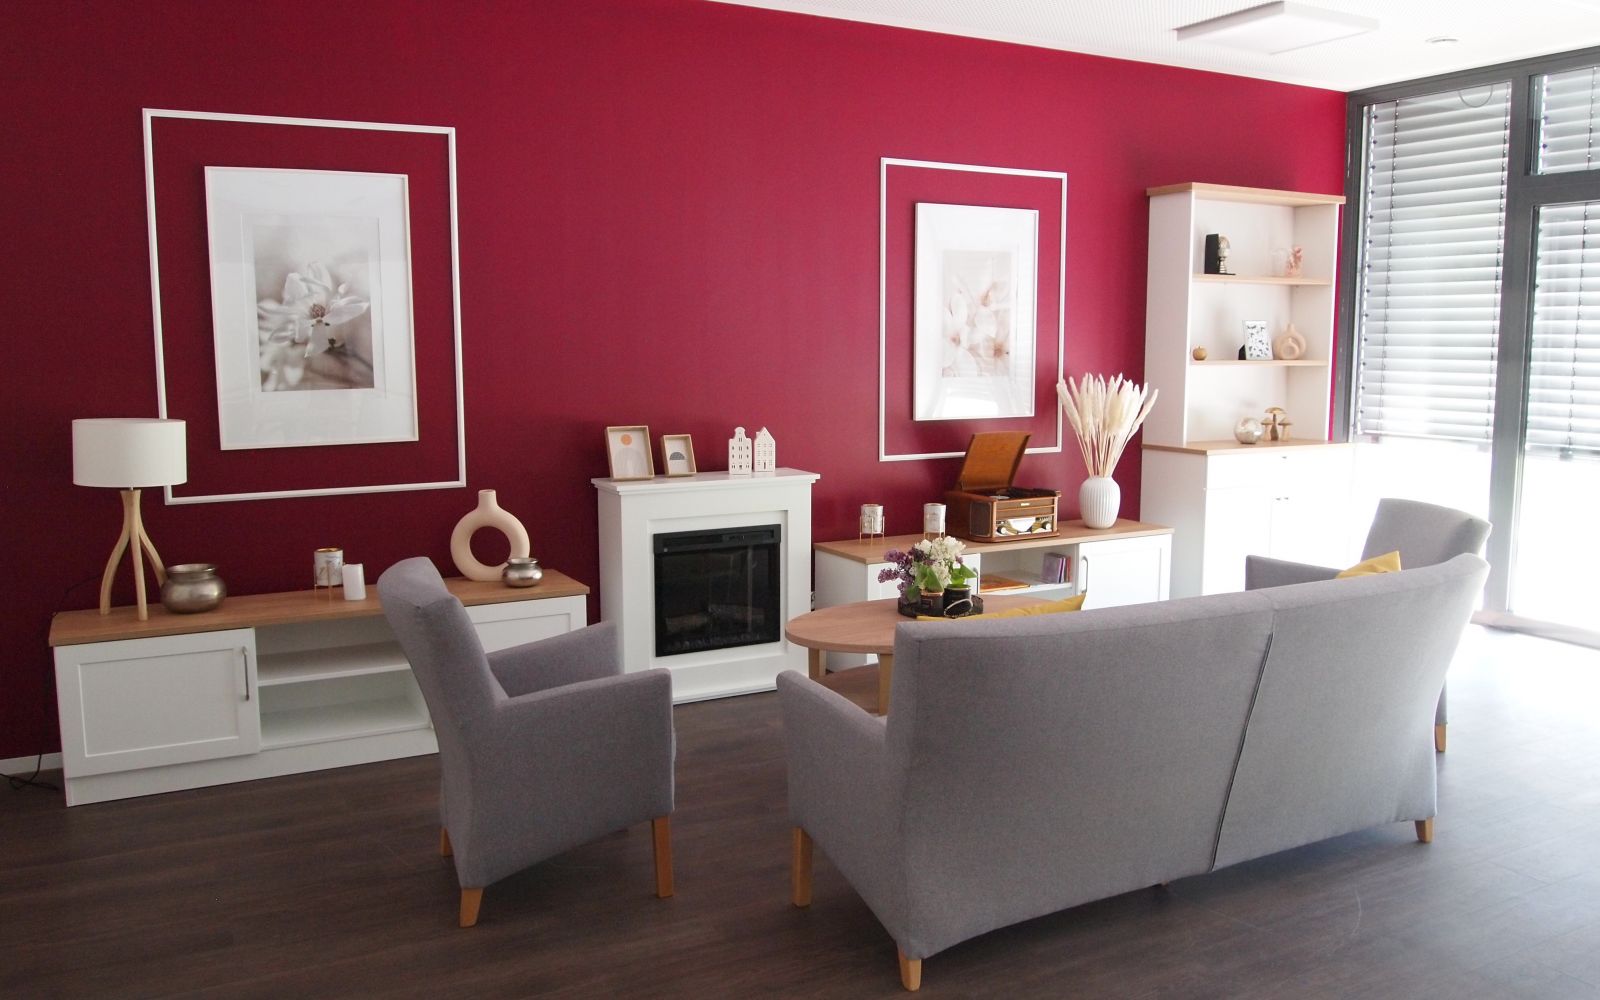 Graues Sofa und Sessel vor pinker Wand und weißen, modernen Möbeln und Bildern.